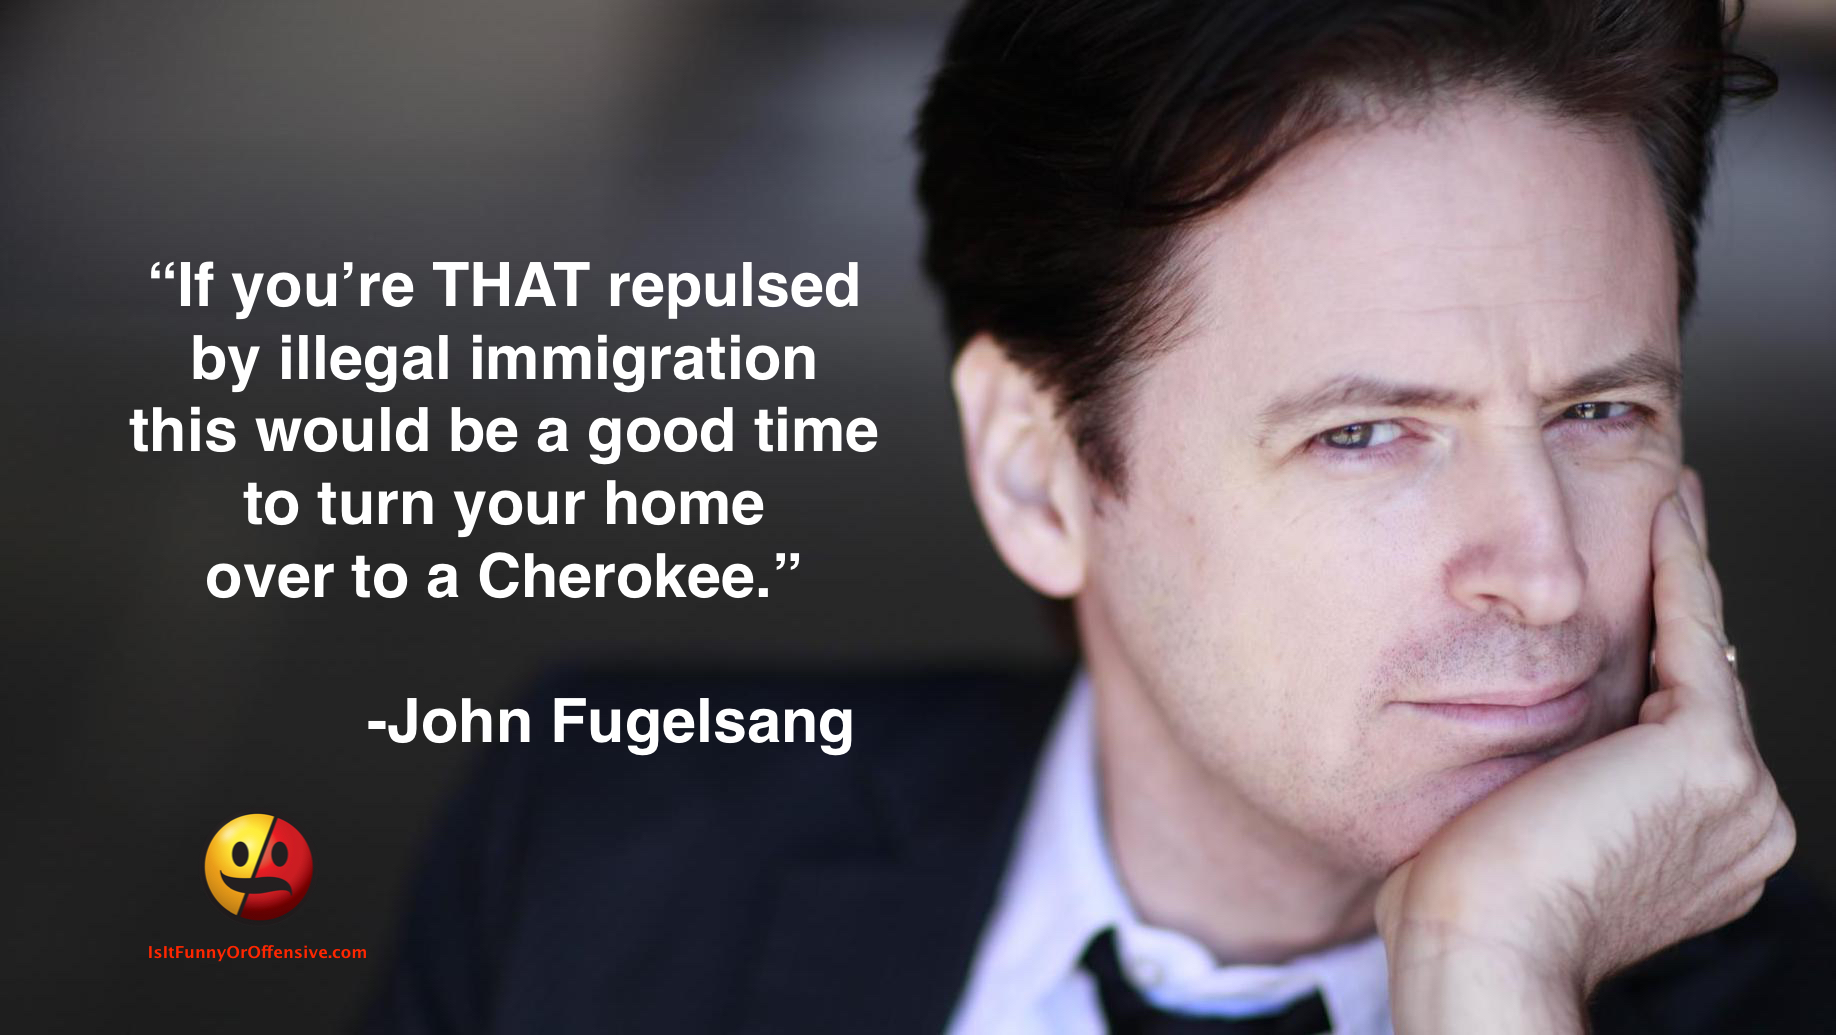 John Fugelsang on Illegal Immigration